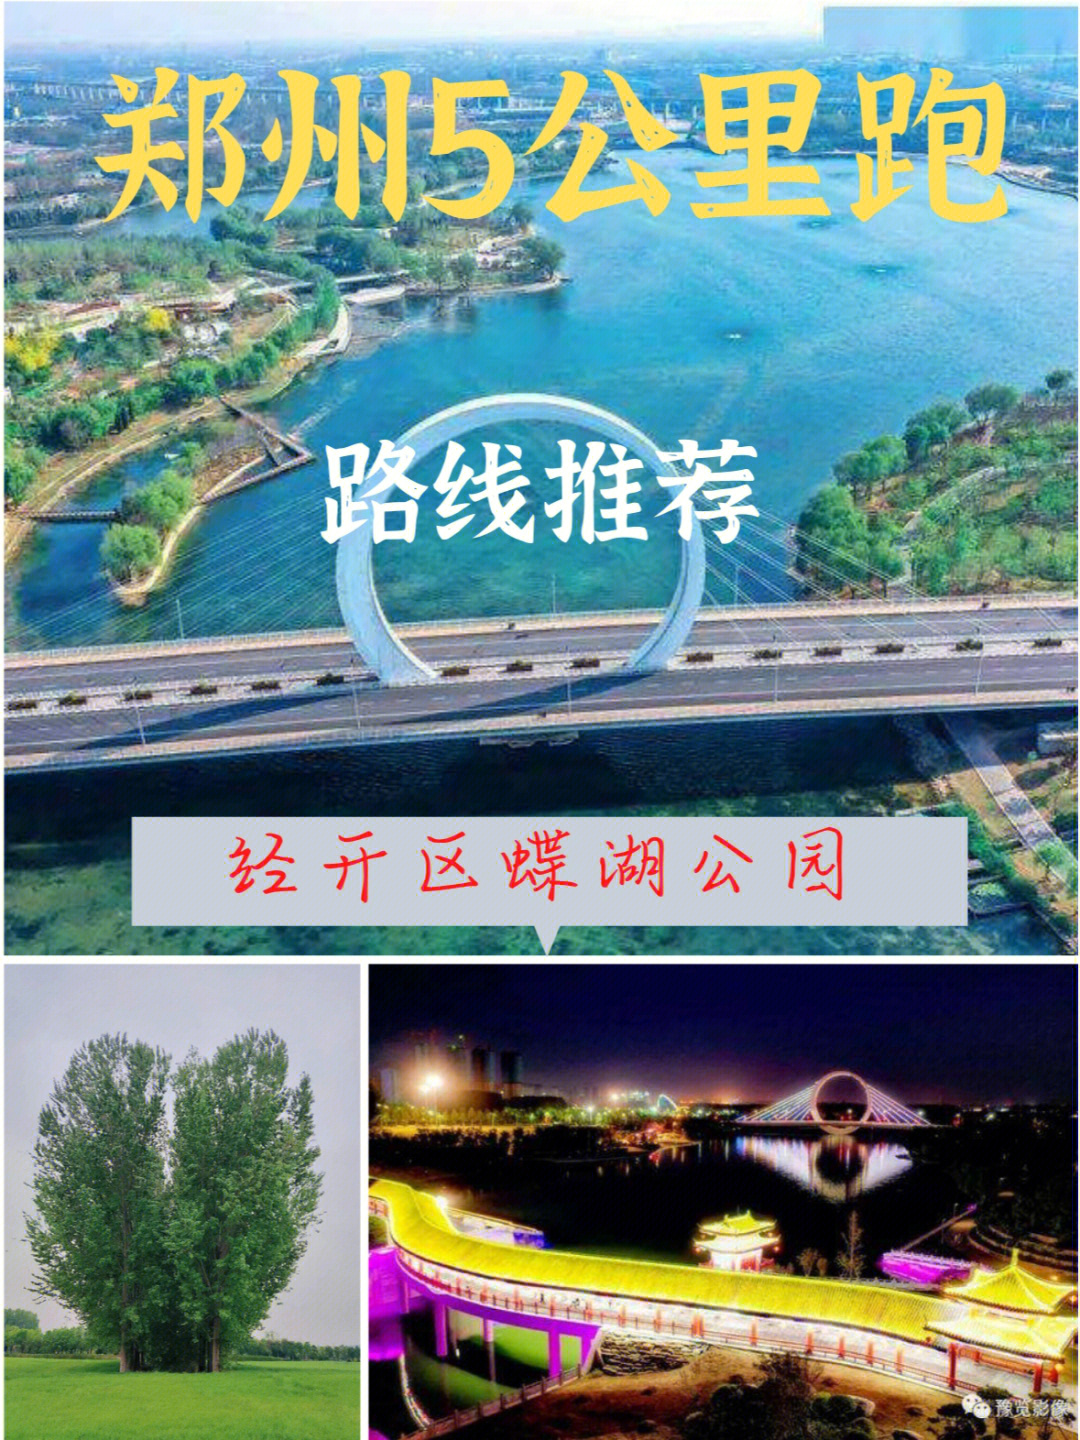 蝶湖公园郑州地址图片